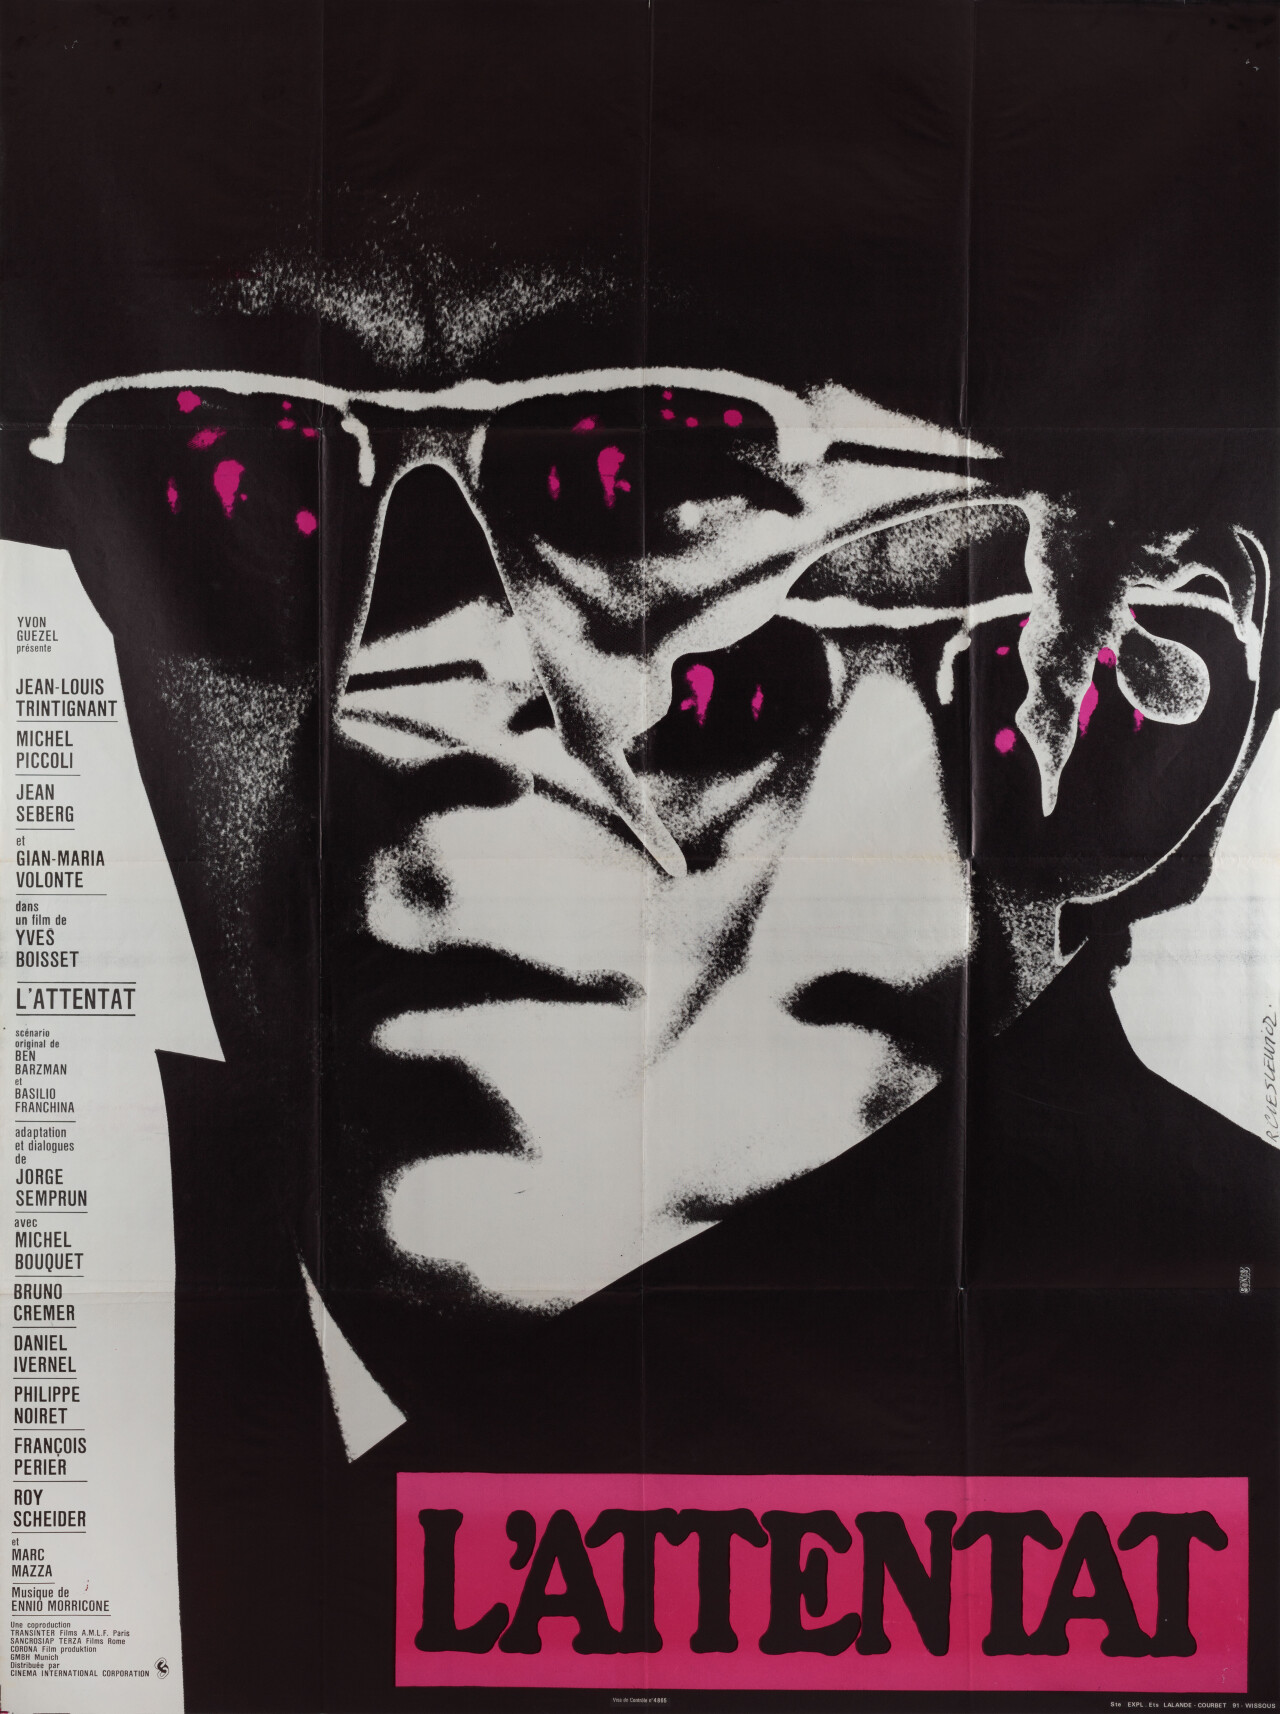 Похищение в Париже (The Assassination, 1972), режиссёр Ив Буассе, французский постер к фильму, автор Роман Чеслевич (графический дизайн, 1972 год)